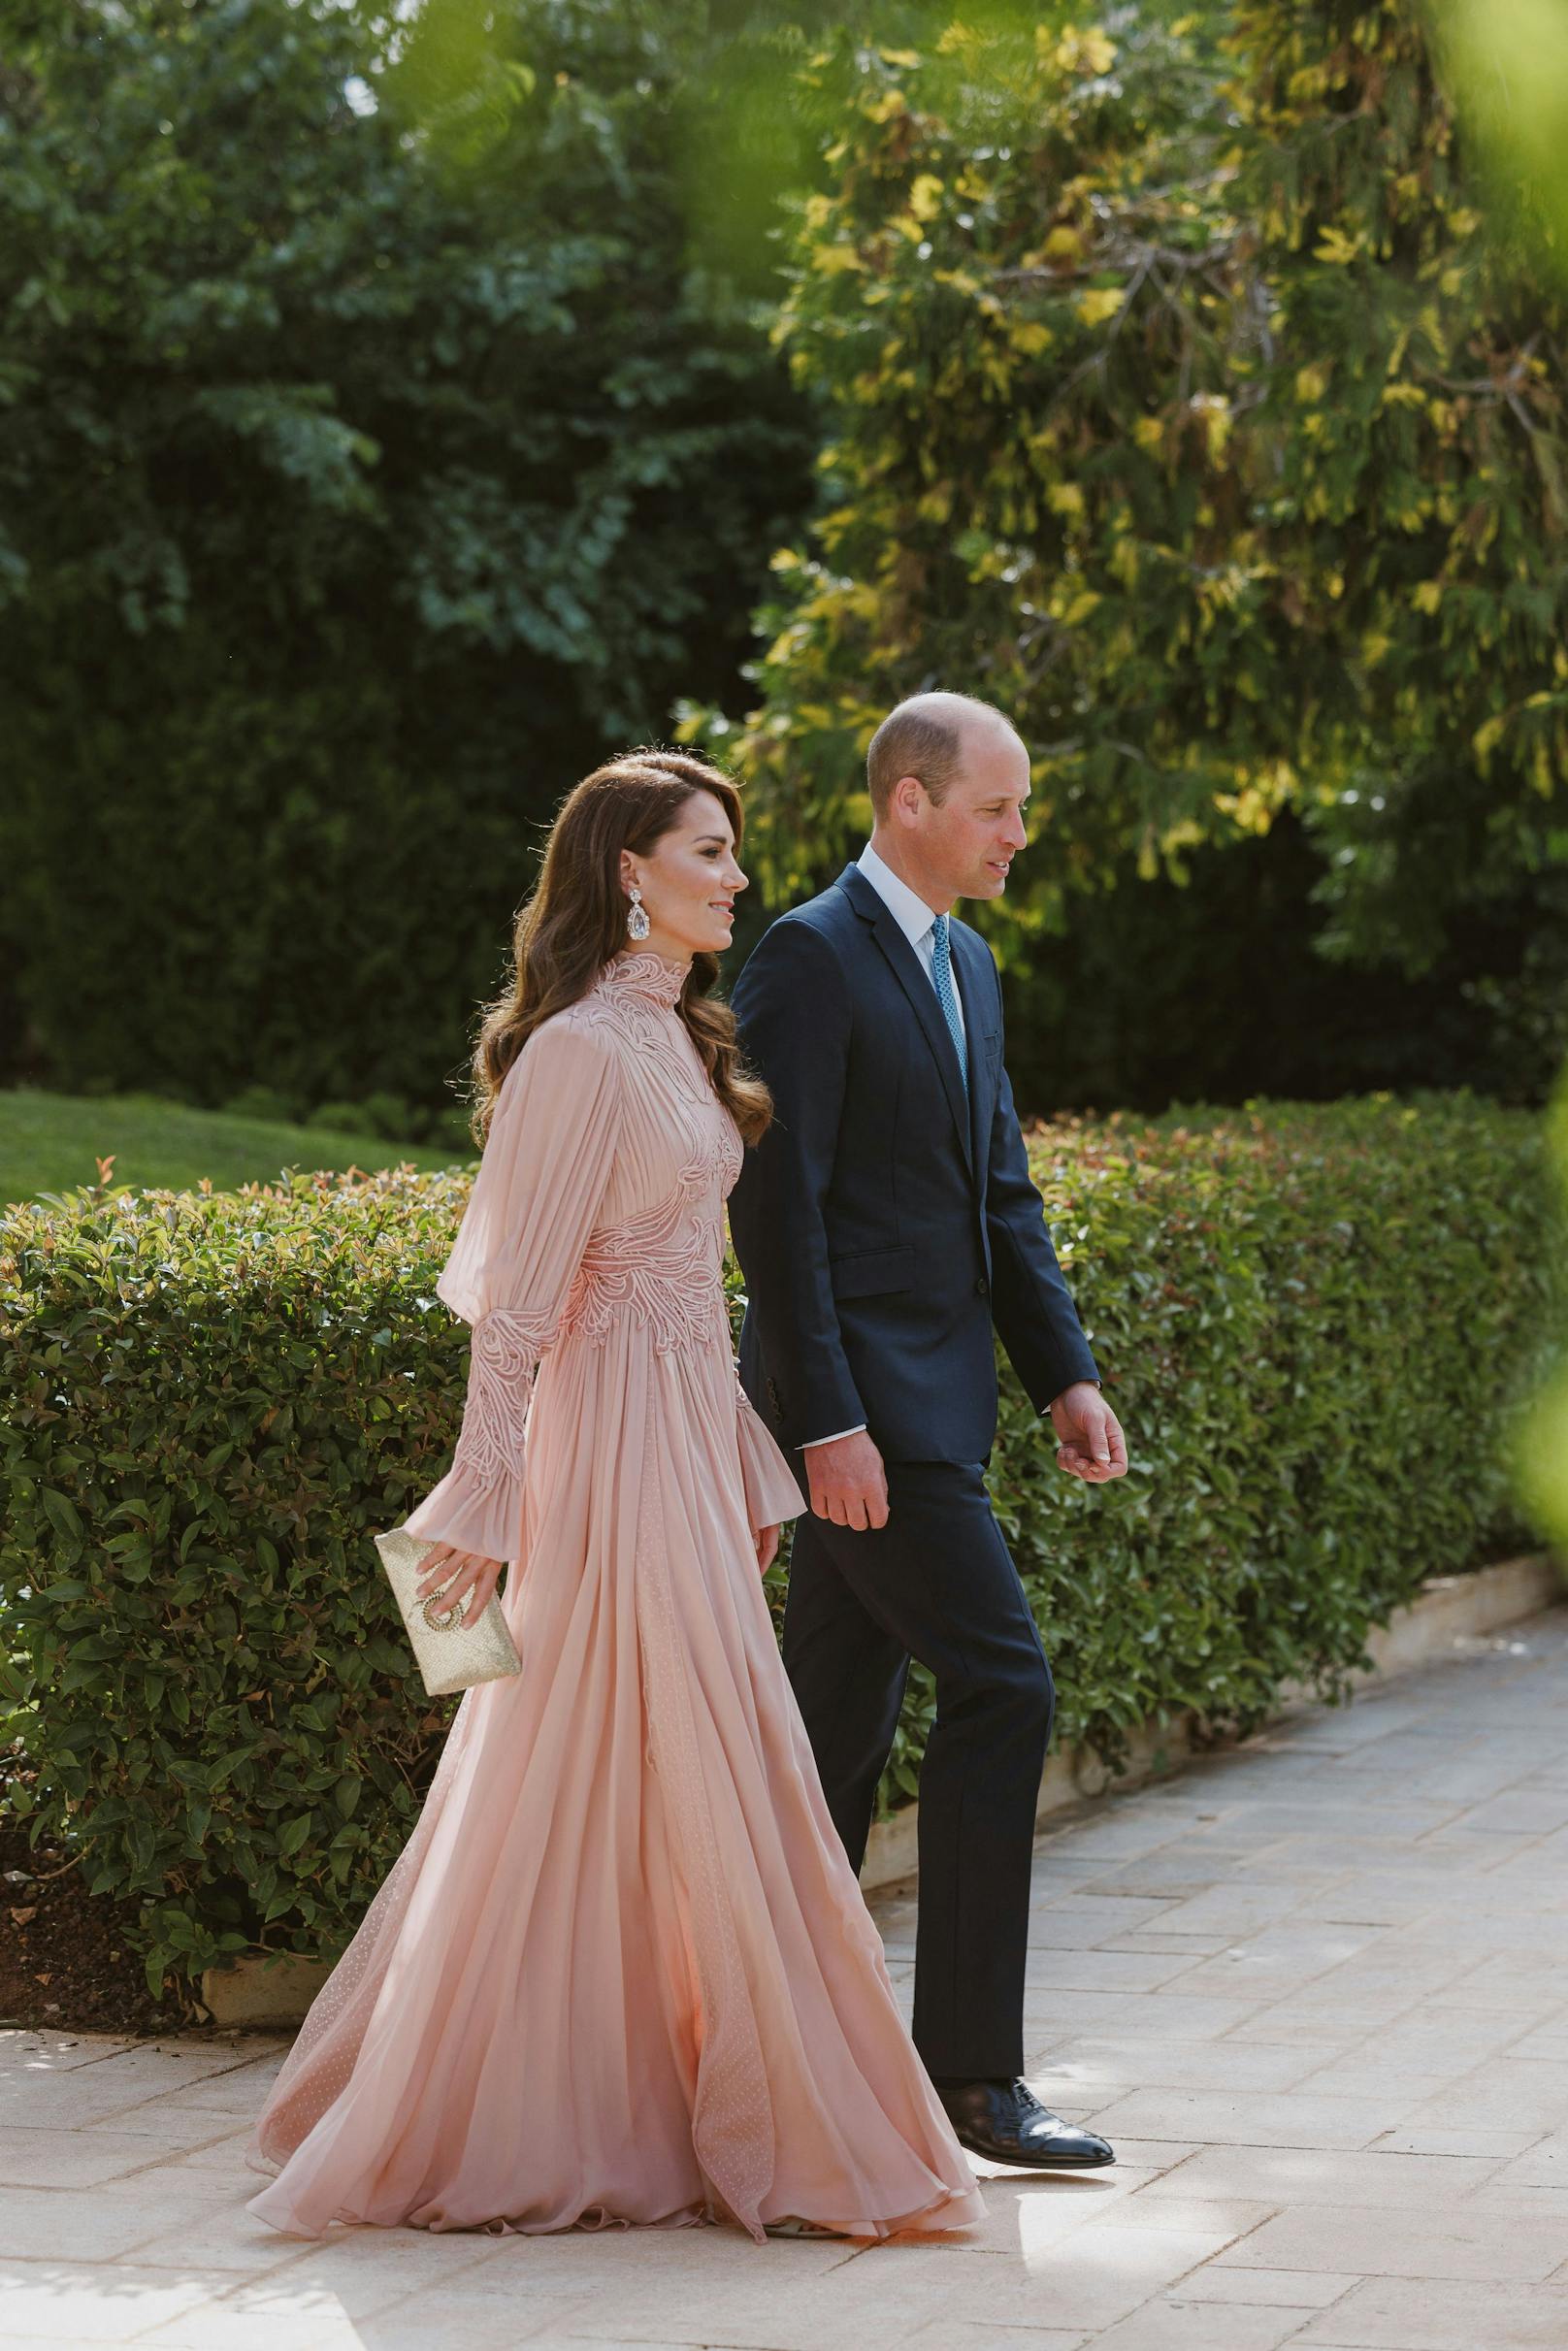 Unter den Gästen waren auch Prinz William und Prinzessin Kate, die in einer abgeänderten Robe von Elie Saab ins Auge stach.